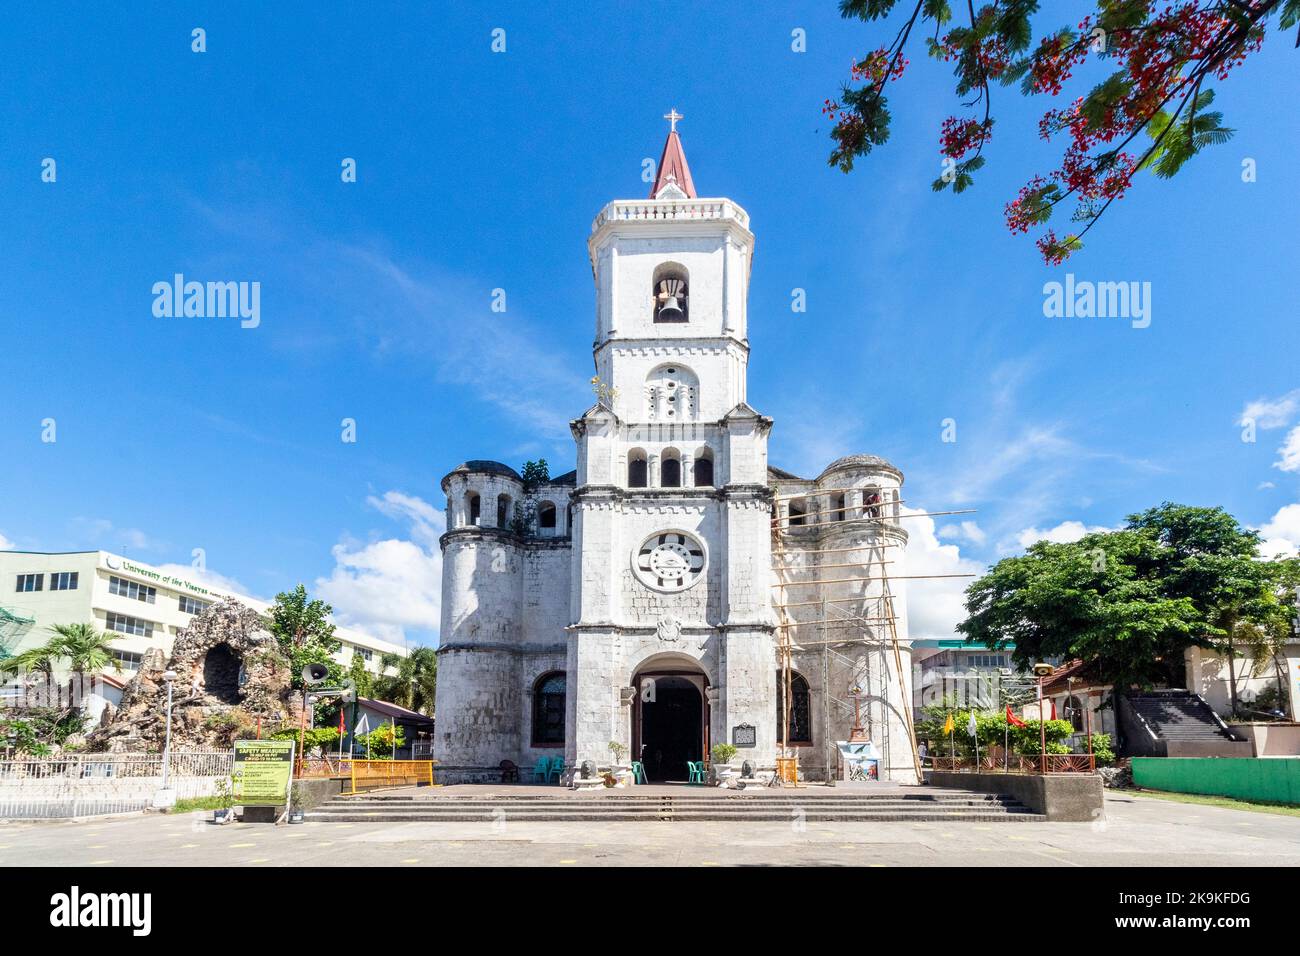 Church facade of Pardo Church in Cebu, Philippines Stock Photo